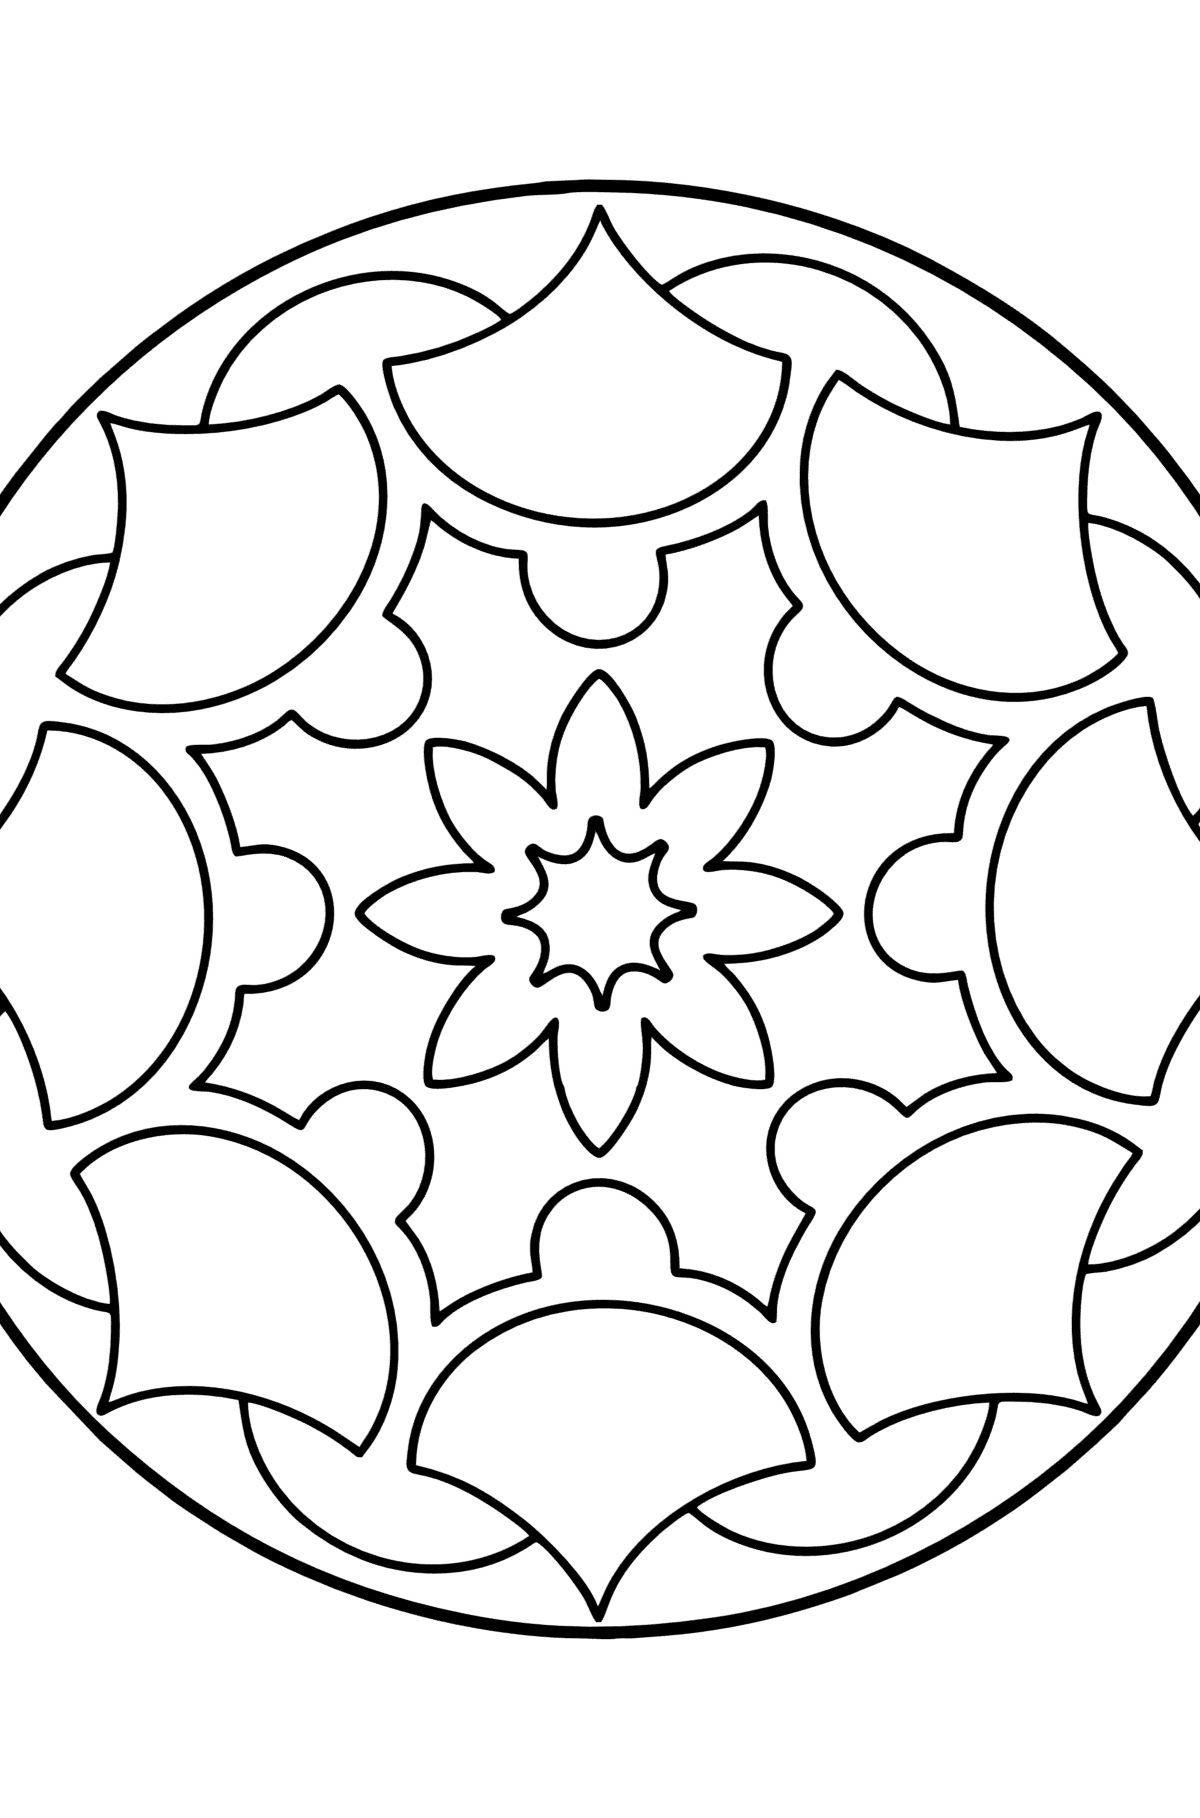 Desenho para colorir Mandala - 13 elementos - Imagens para Colorir para Crianças